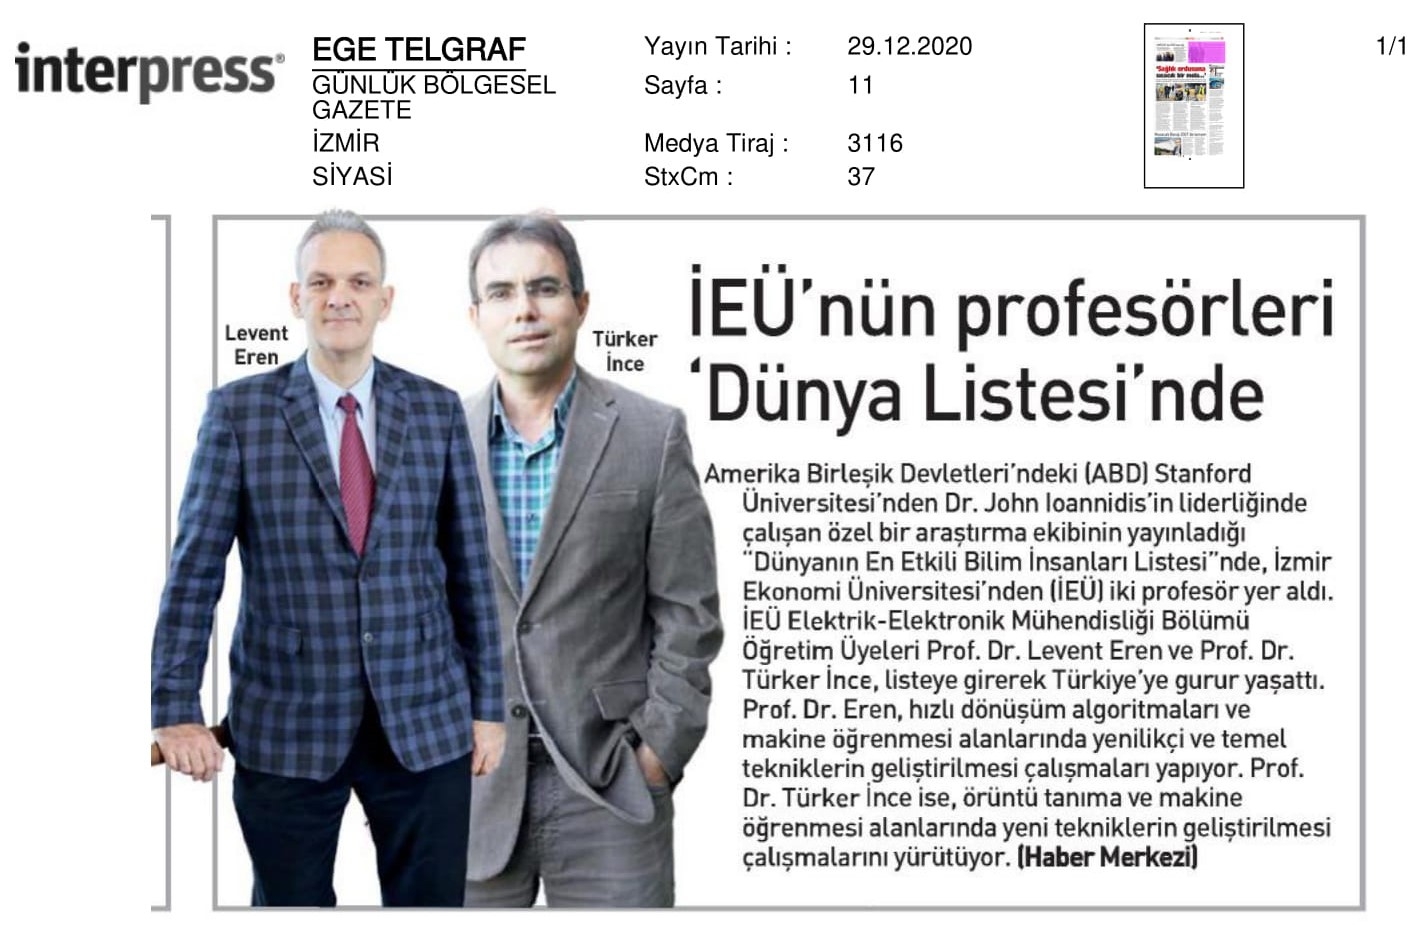 İzmir Ekonomi’nin profesörleri ‘Dünya Listesi’nde